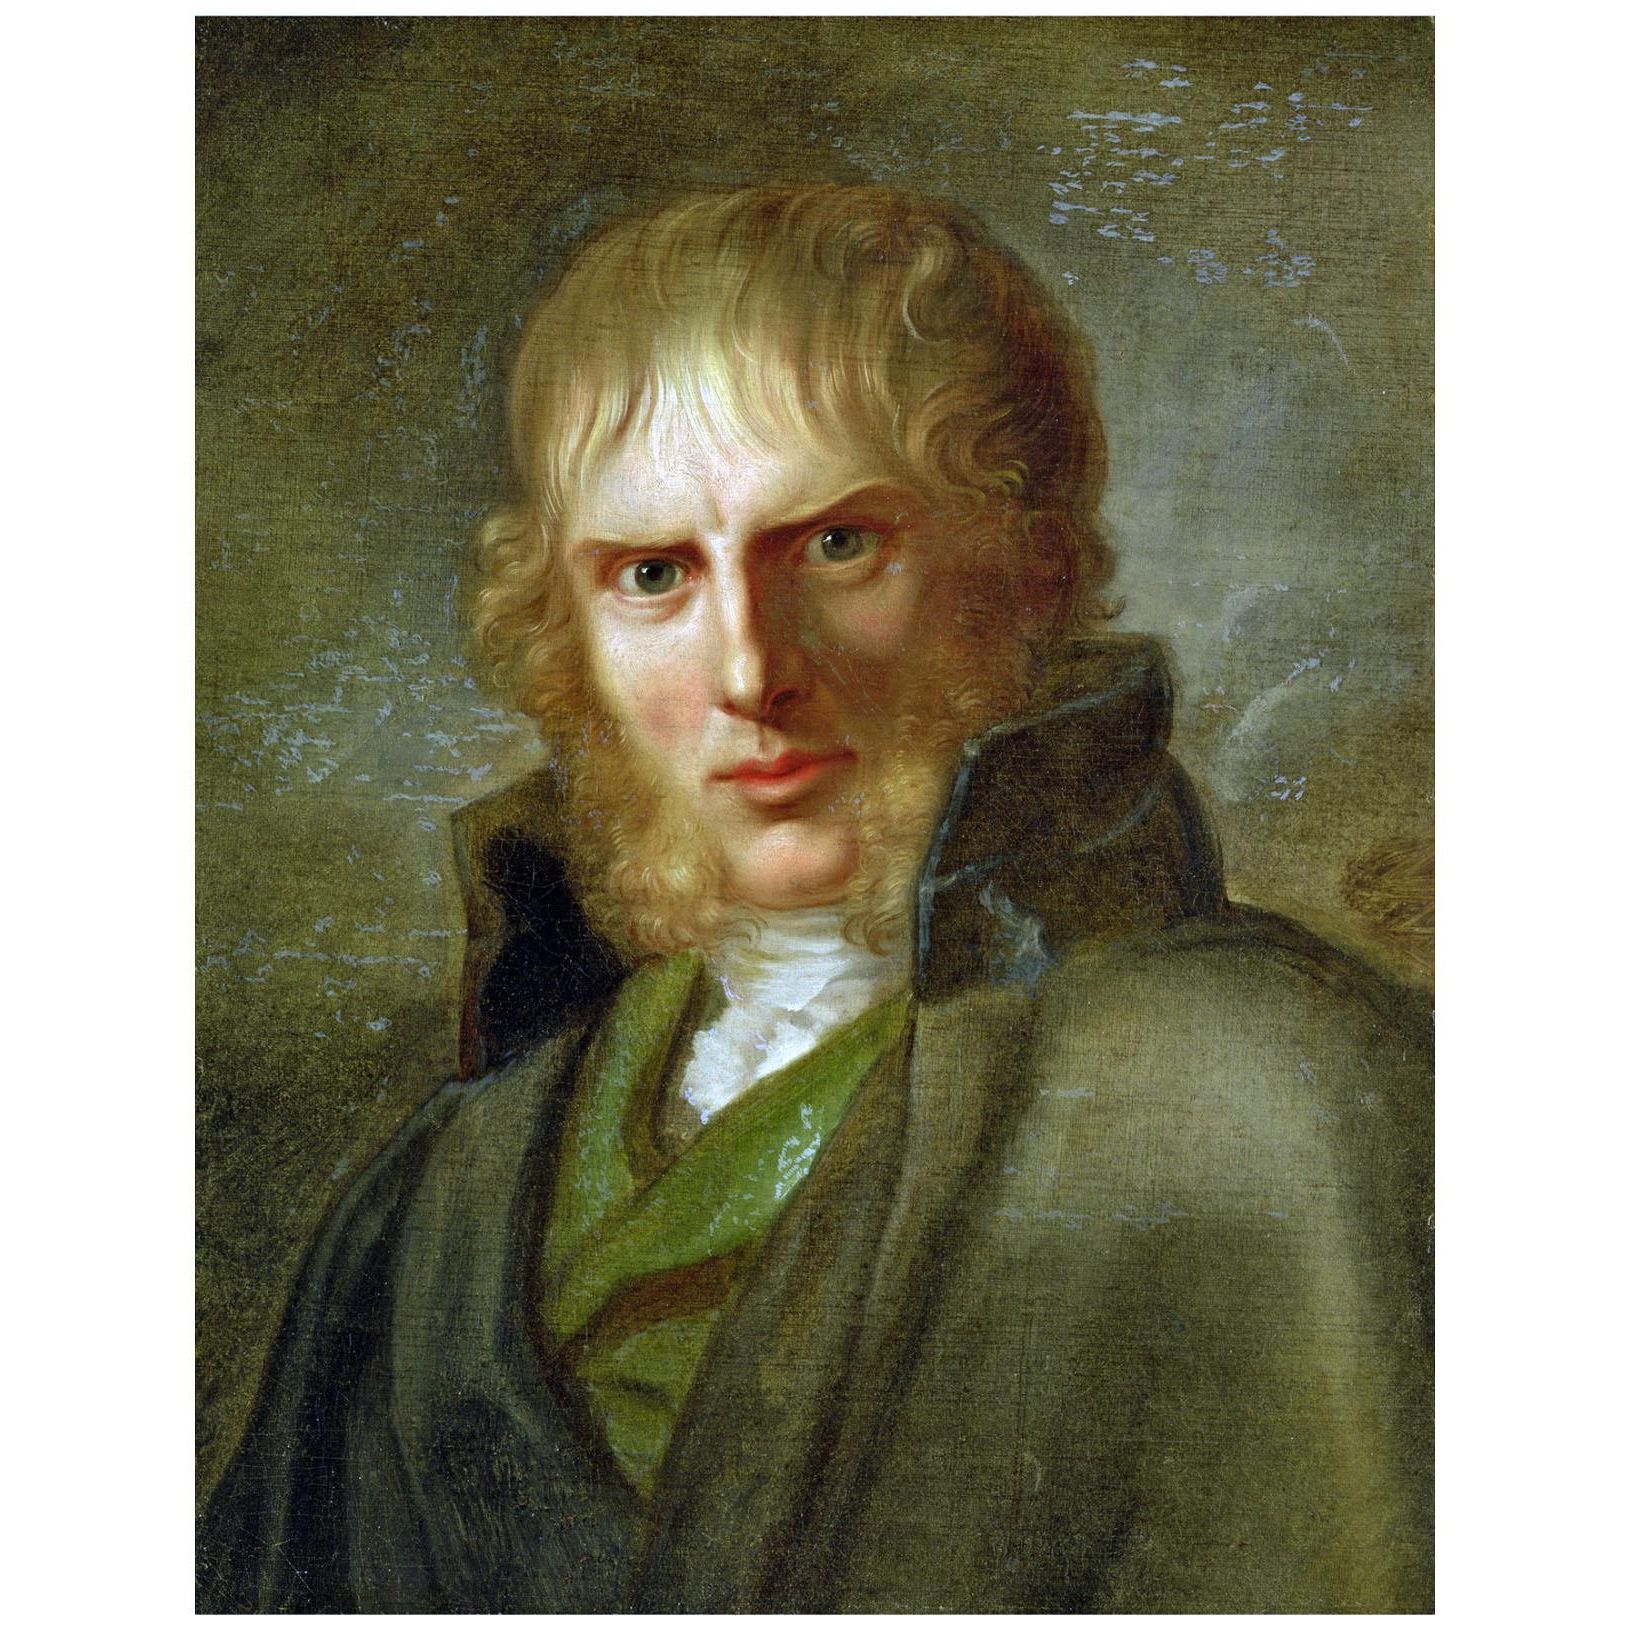 Gerhard von Kugelgen. Caspar David Friedrich. 1808. Hamburger Kunsthalle